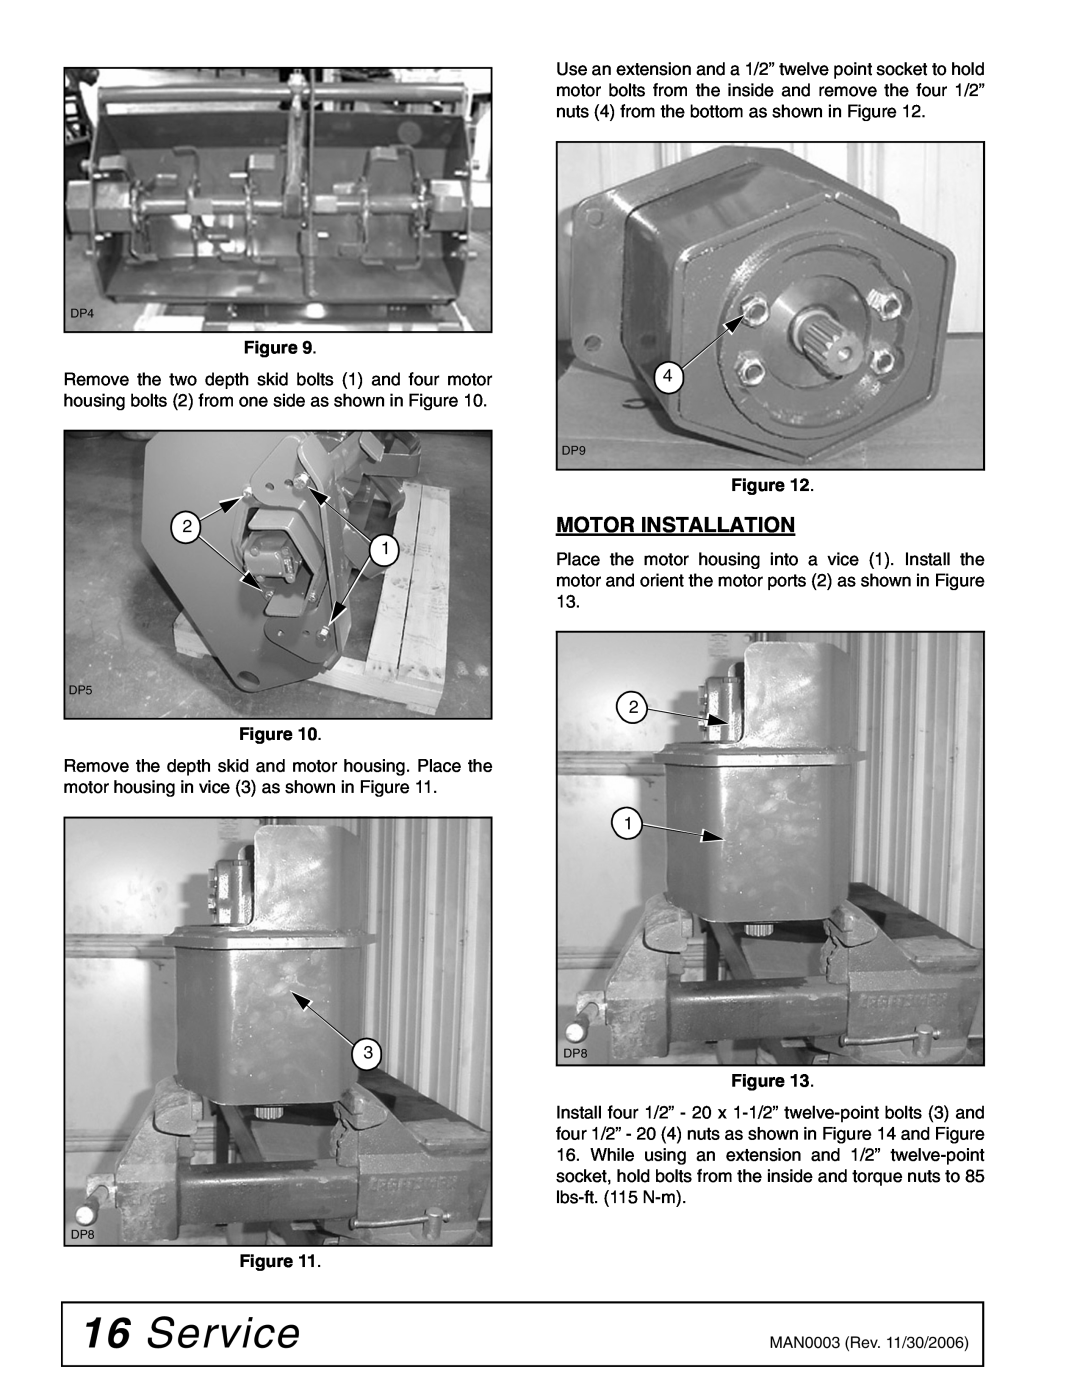 Woods Equipment TL73, TL52, TL84 manual Service, Motor Installation 